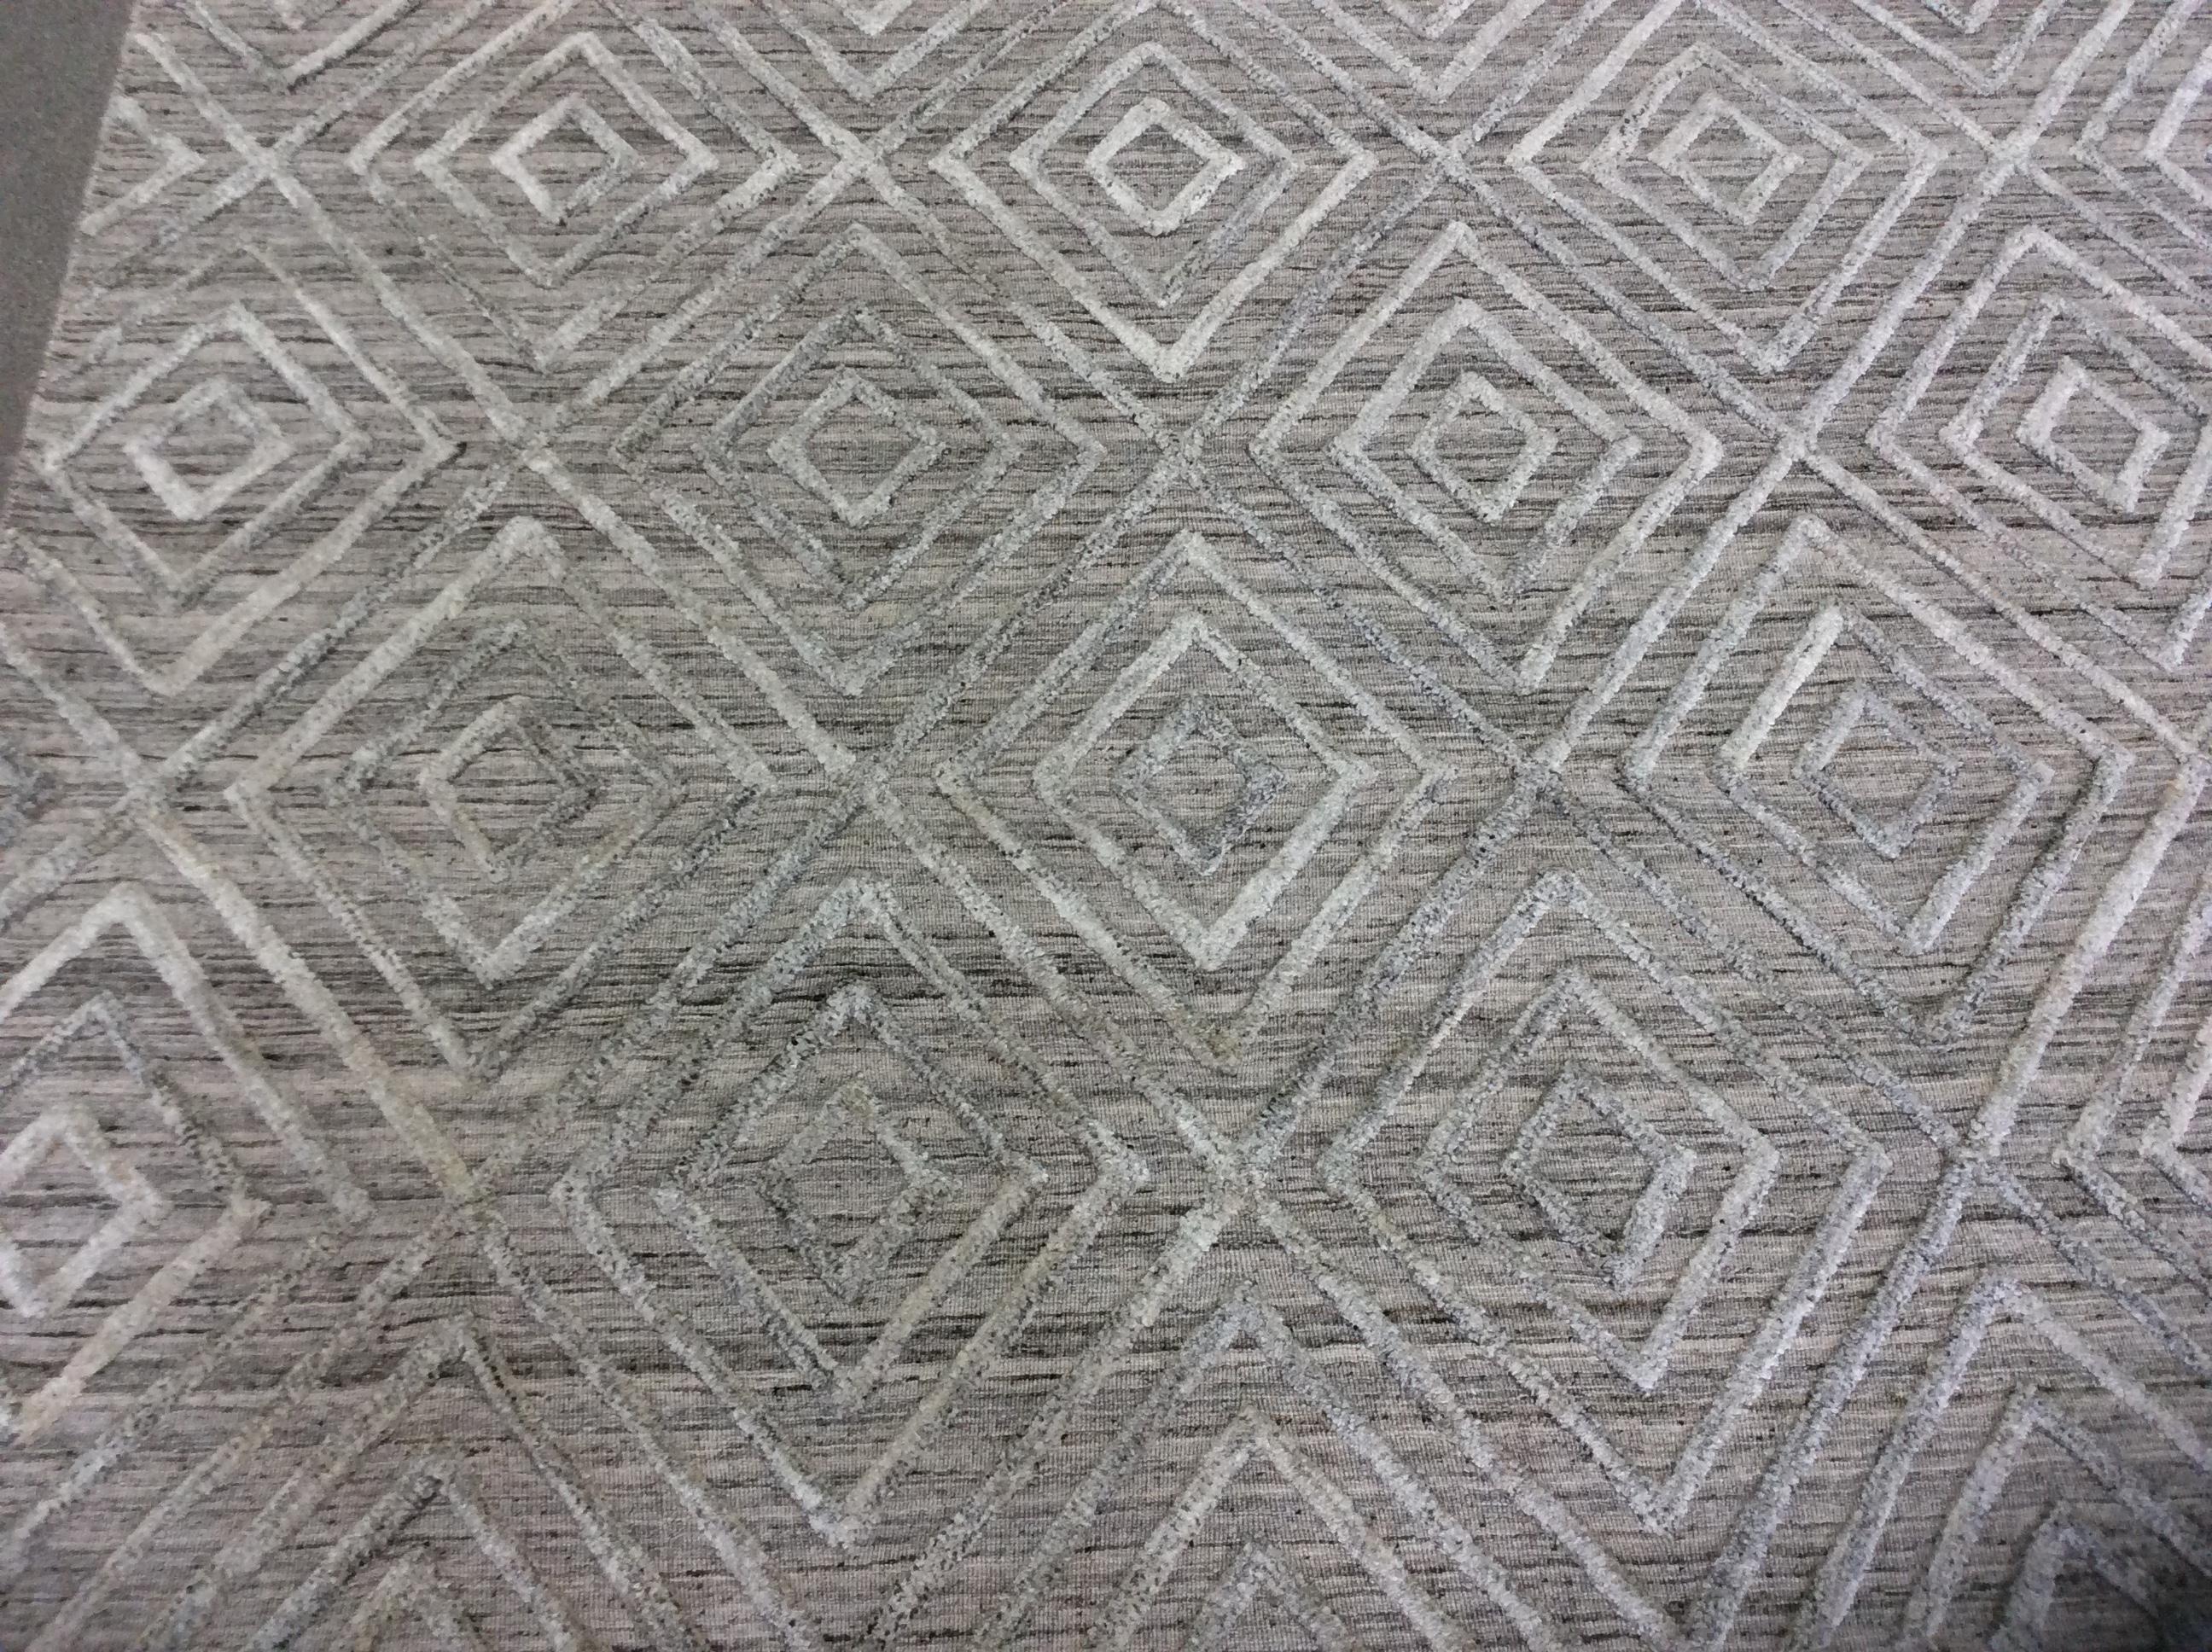 Geometrischer, hoher und niedriger zeitgenössischer Teppich in Taupe.

Das hohe, niedrige Design sorgt für einen lässigen, aber polierten Look. Mit neutraler Farbe und erhabenem geometrischem Muster.